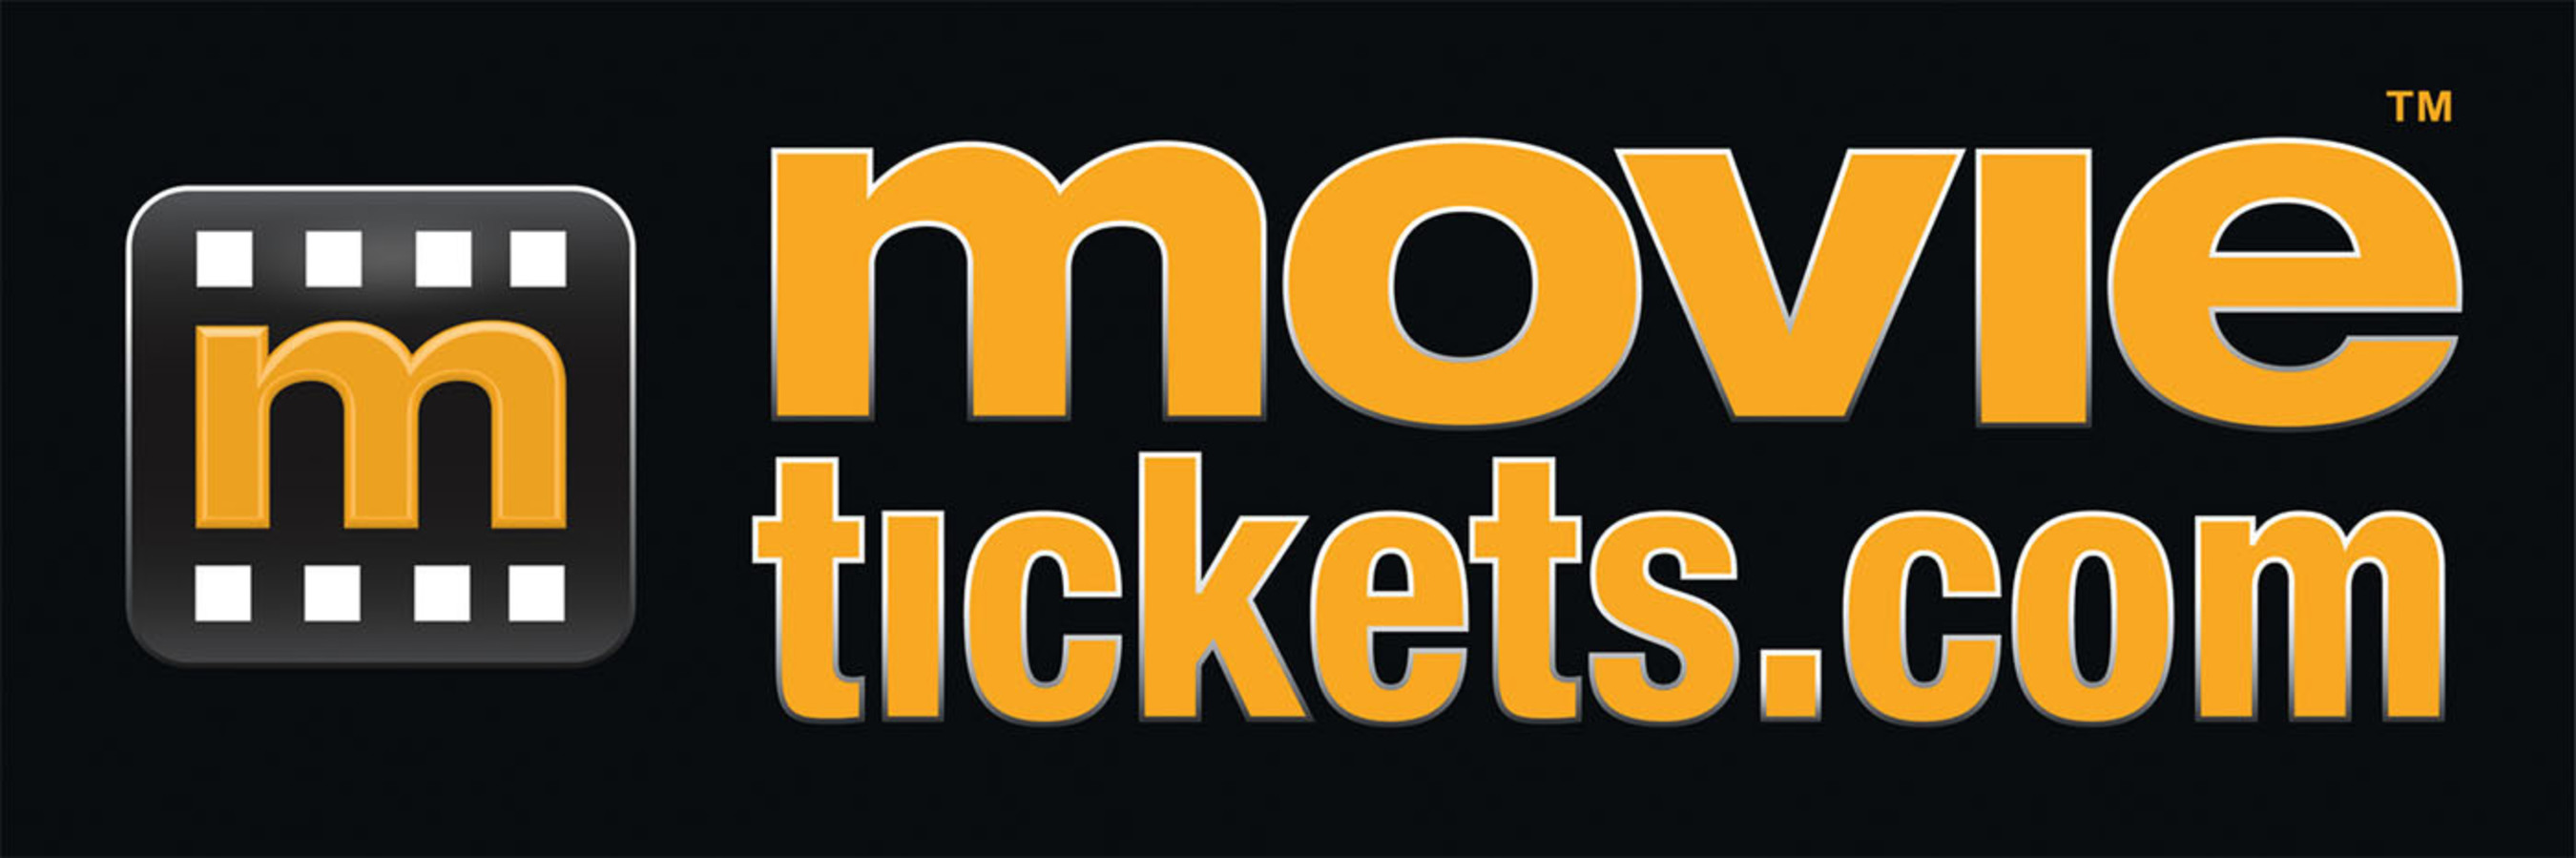 MovieTickets.com logo.